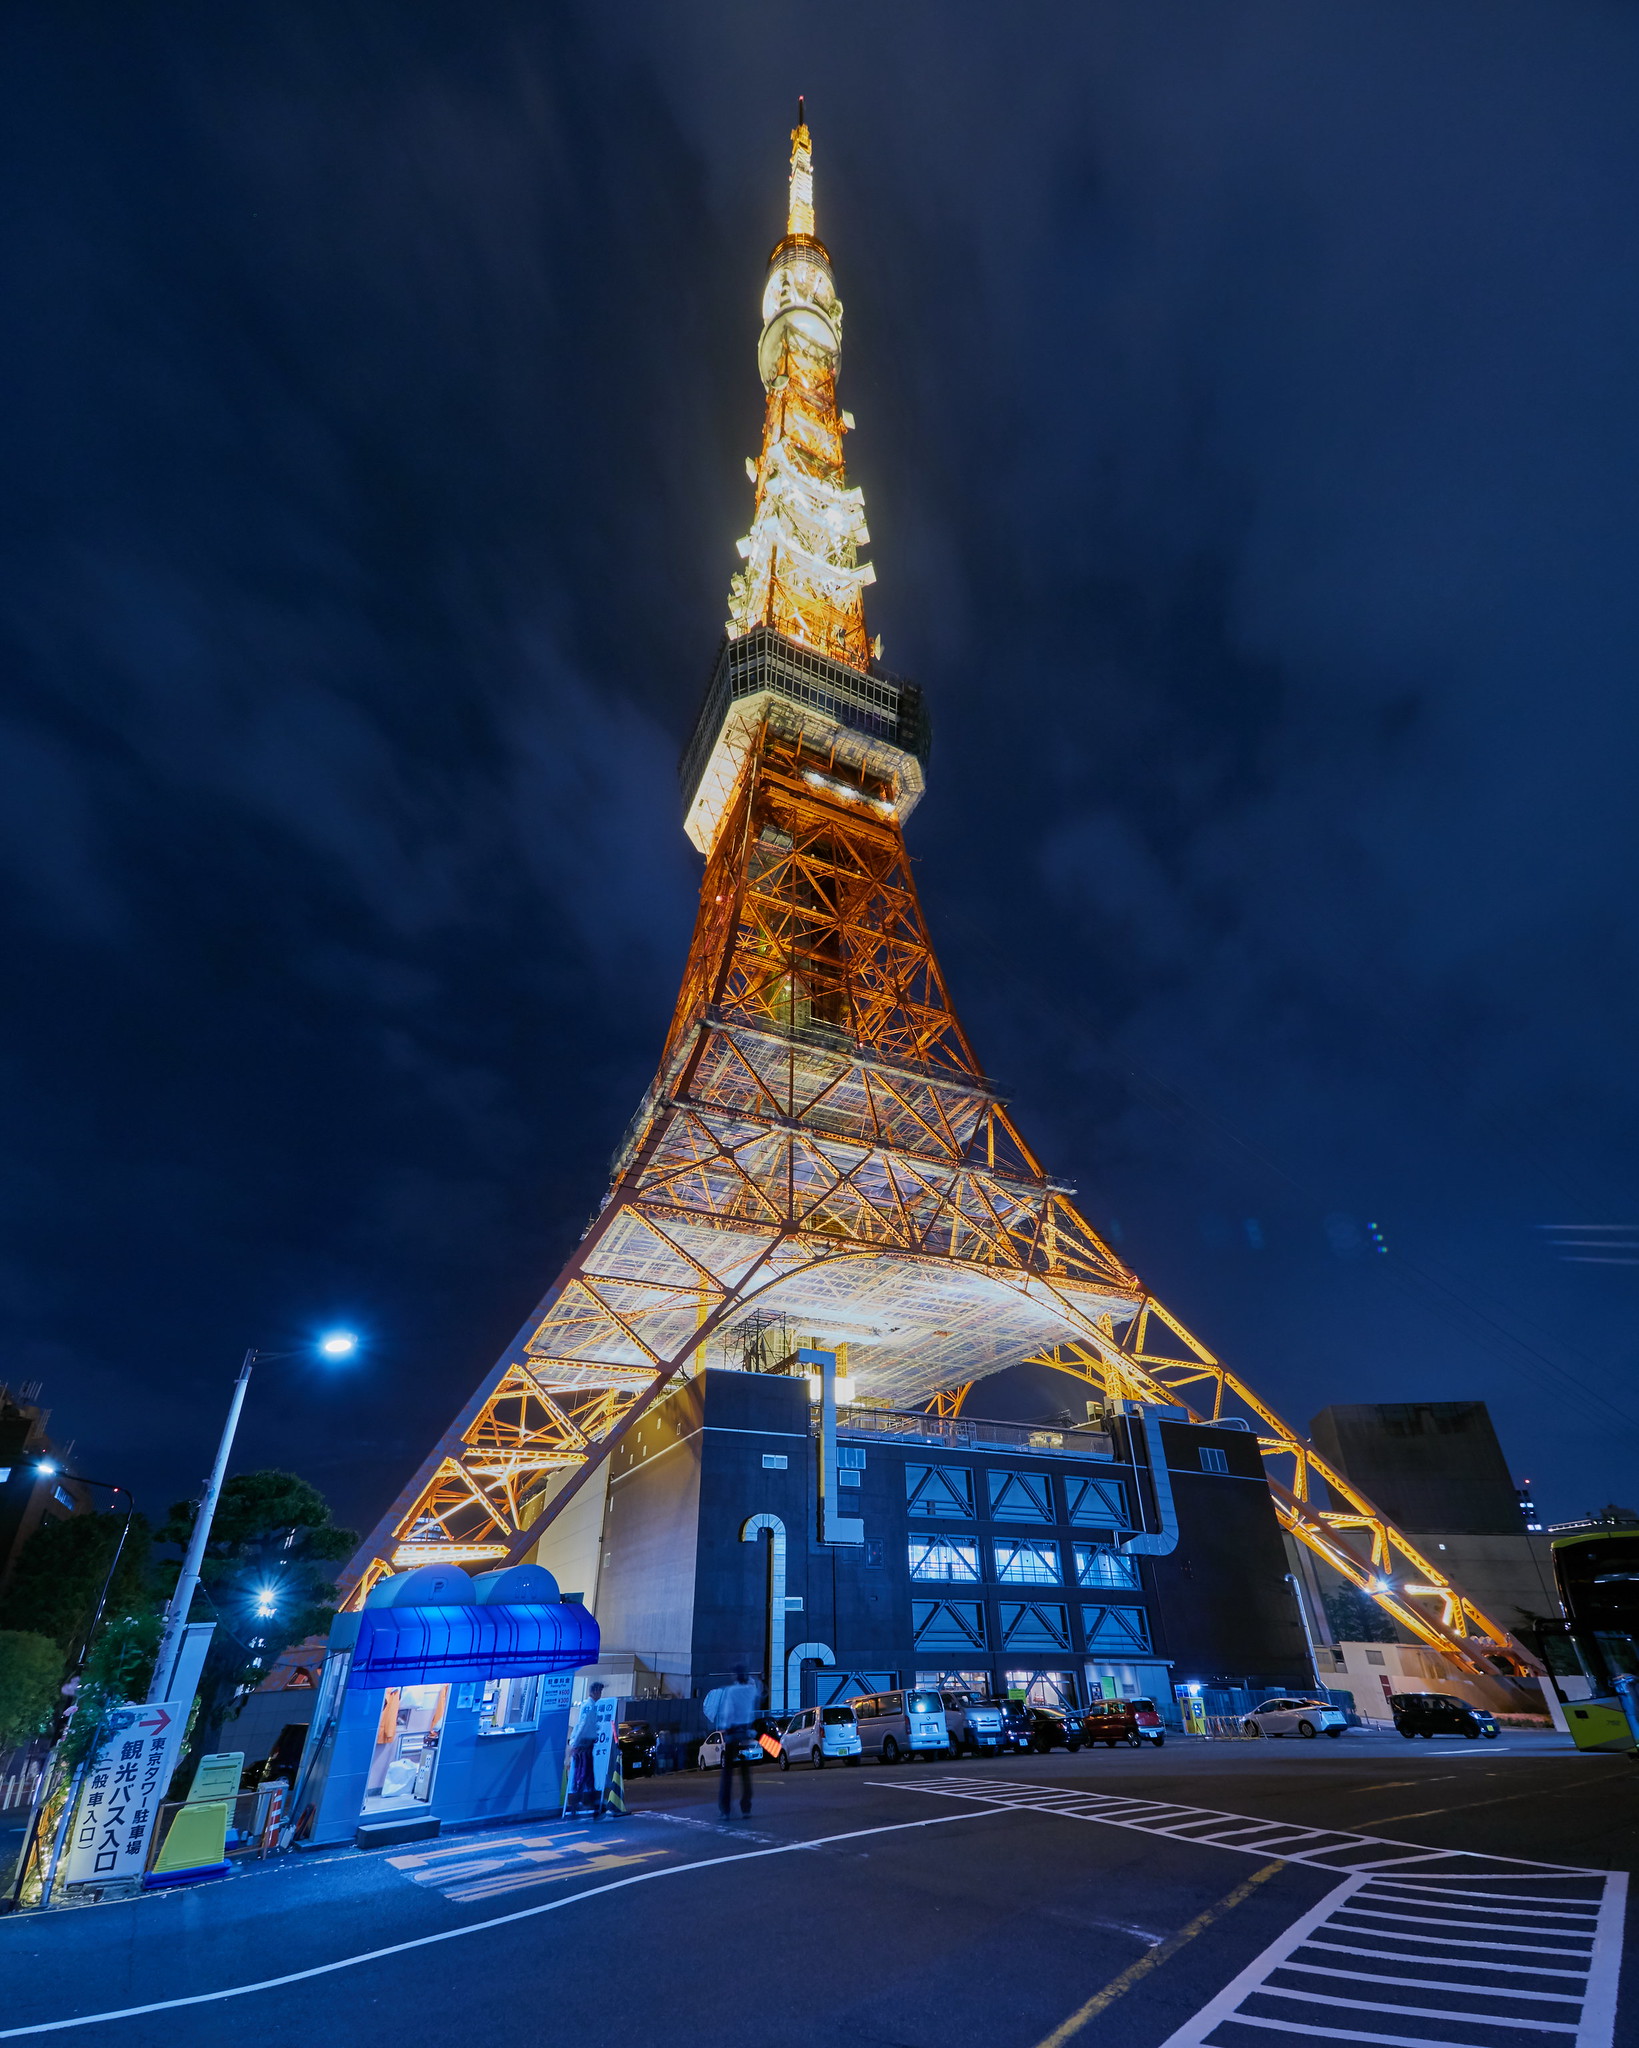 La Torre de Tokio en Japon